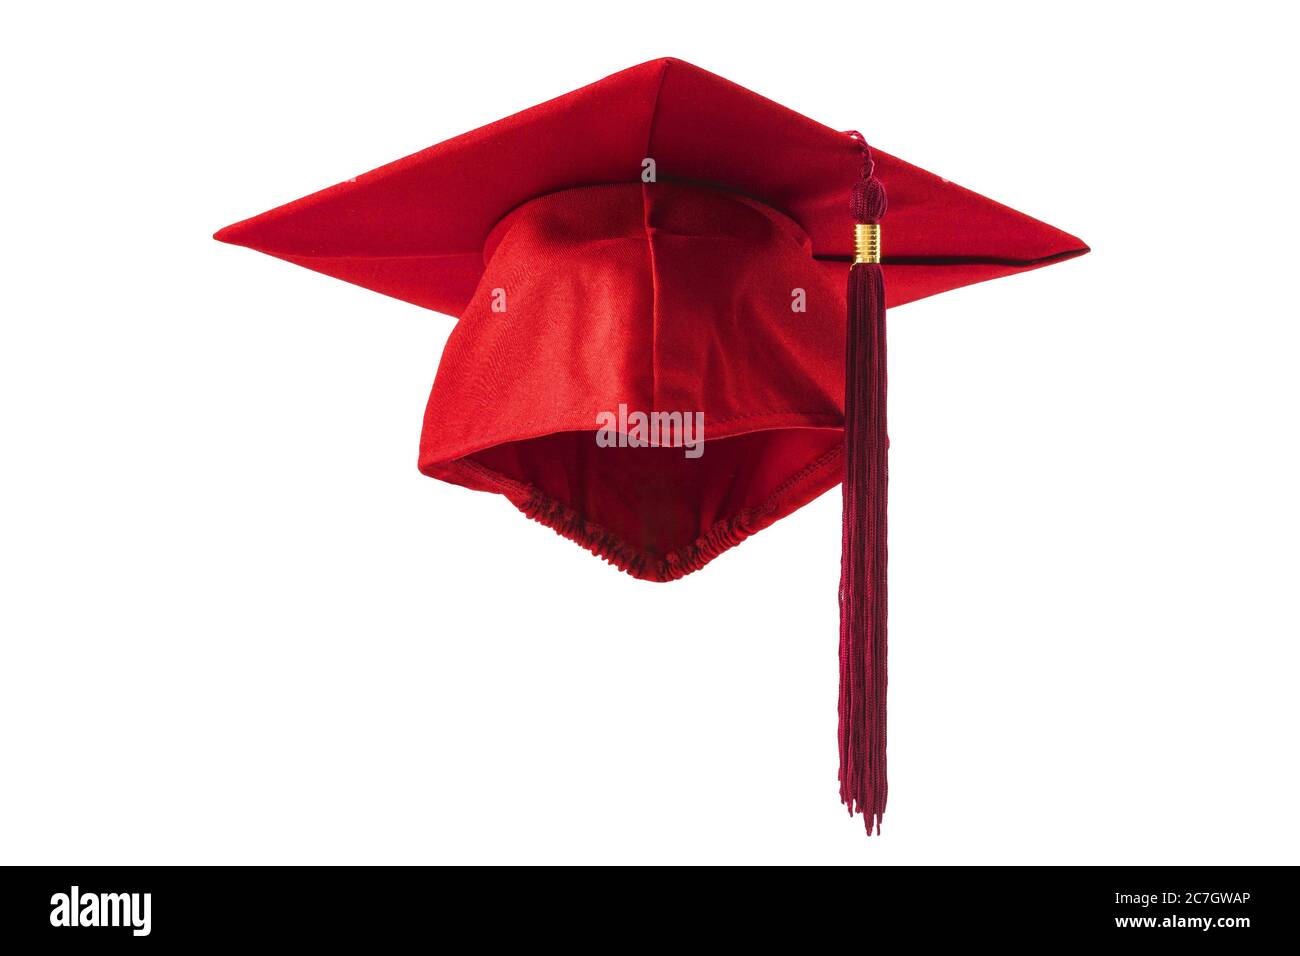 Realizzazione accademica e celebrare il successo dell'istruzione superiore idea concettuale con il berretto rosso di graduazione della mortarboard con ritaglio percorso in m fantasma Foto Stock